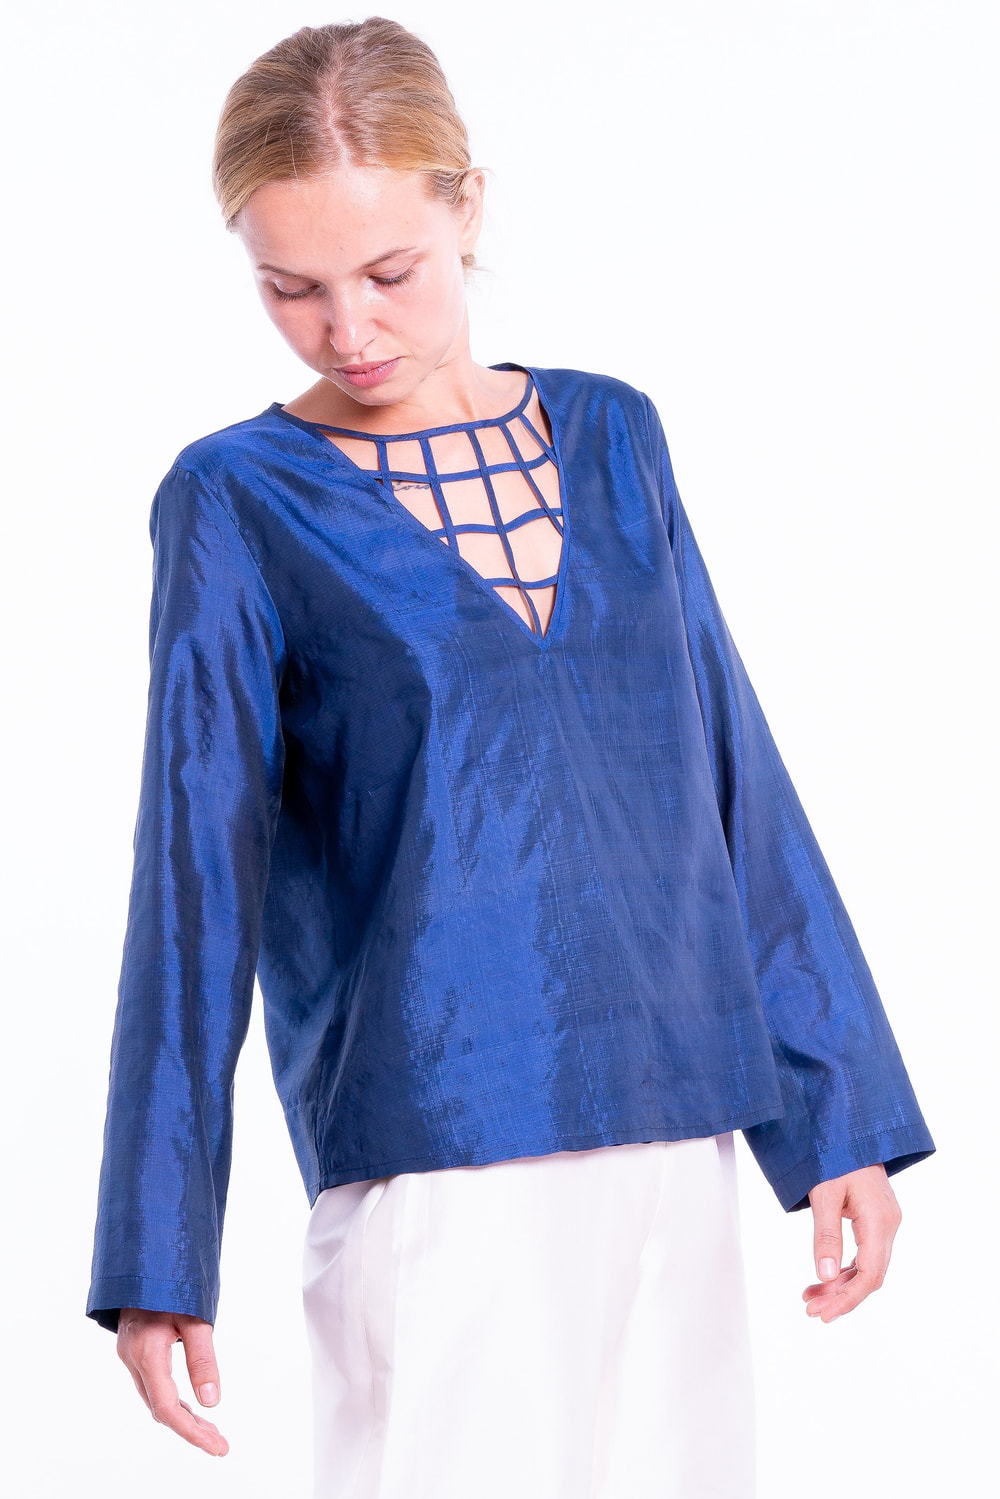 blouse bleue en soie naturelle avec entrelacs sur le décolleté, entièrement doublée, manches longues